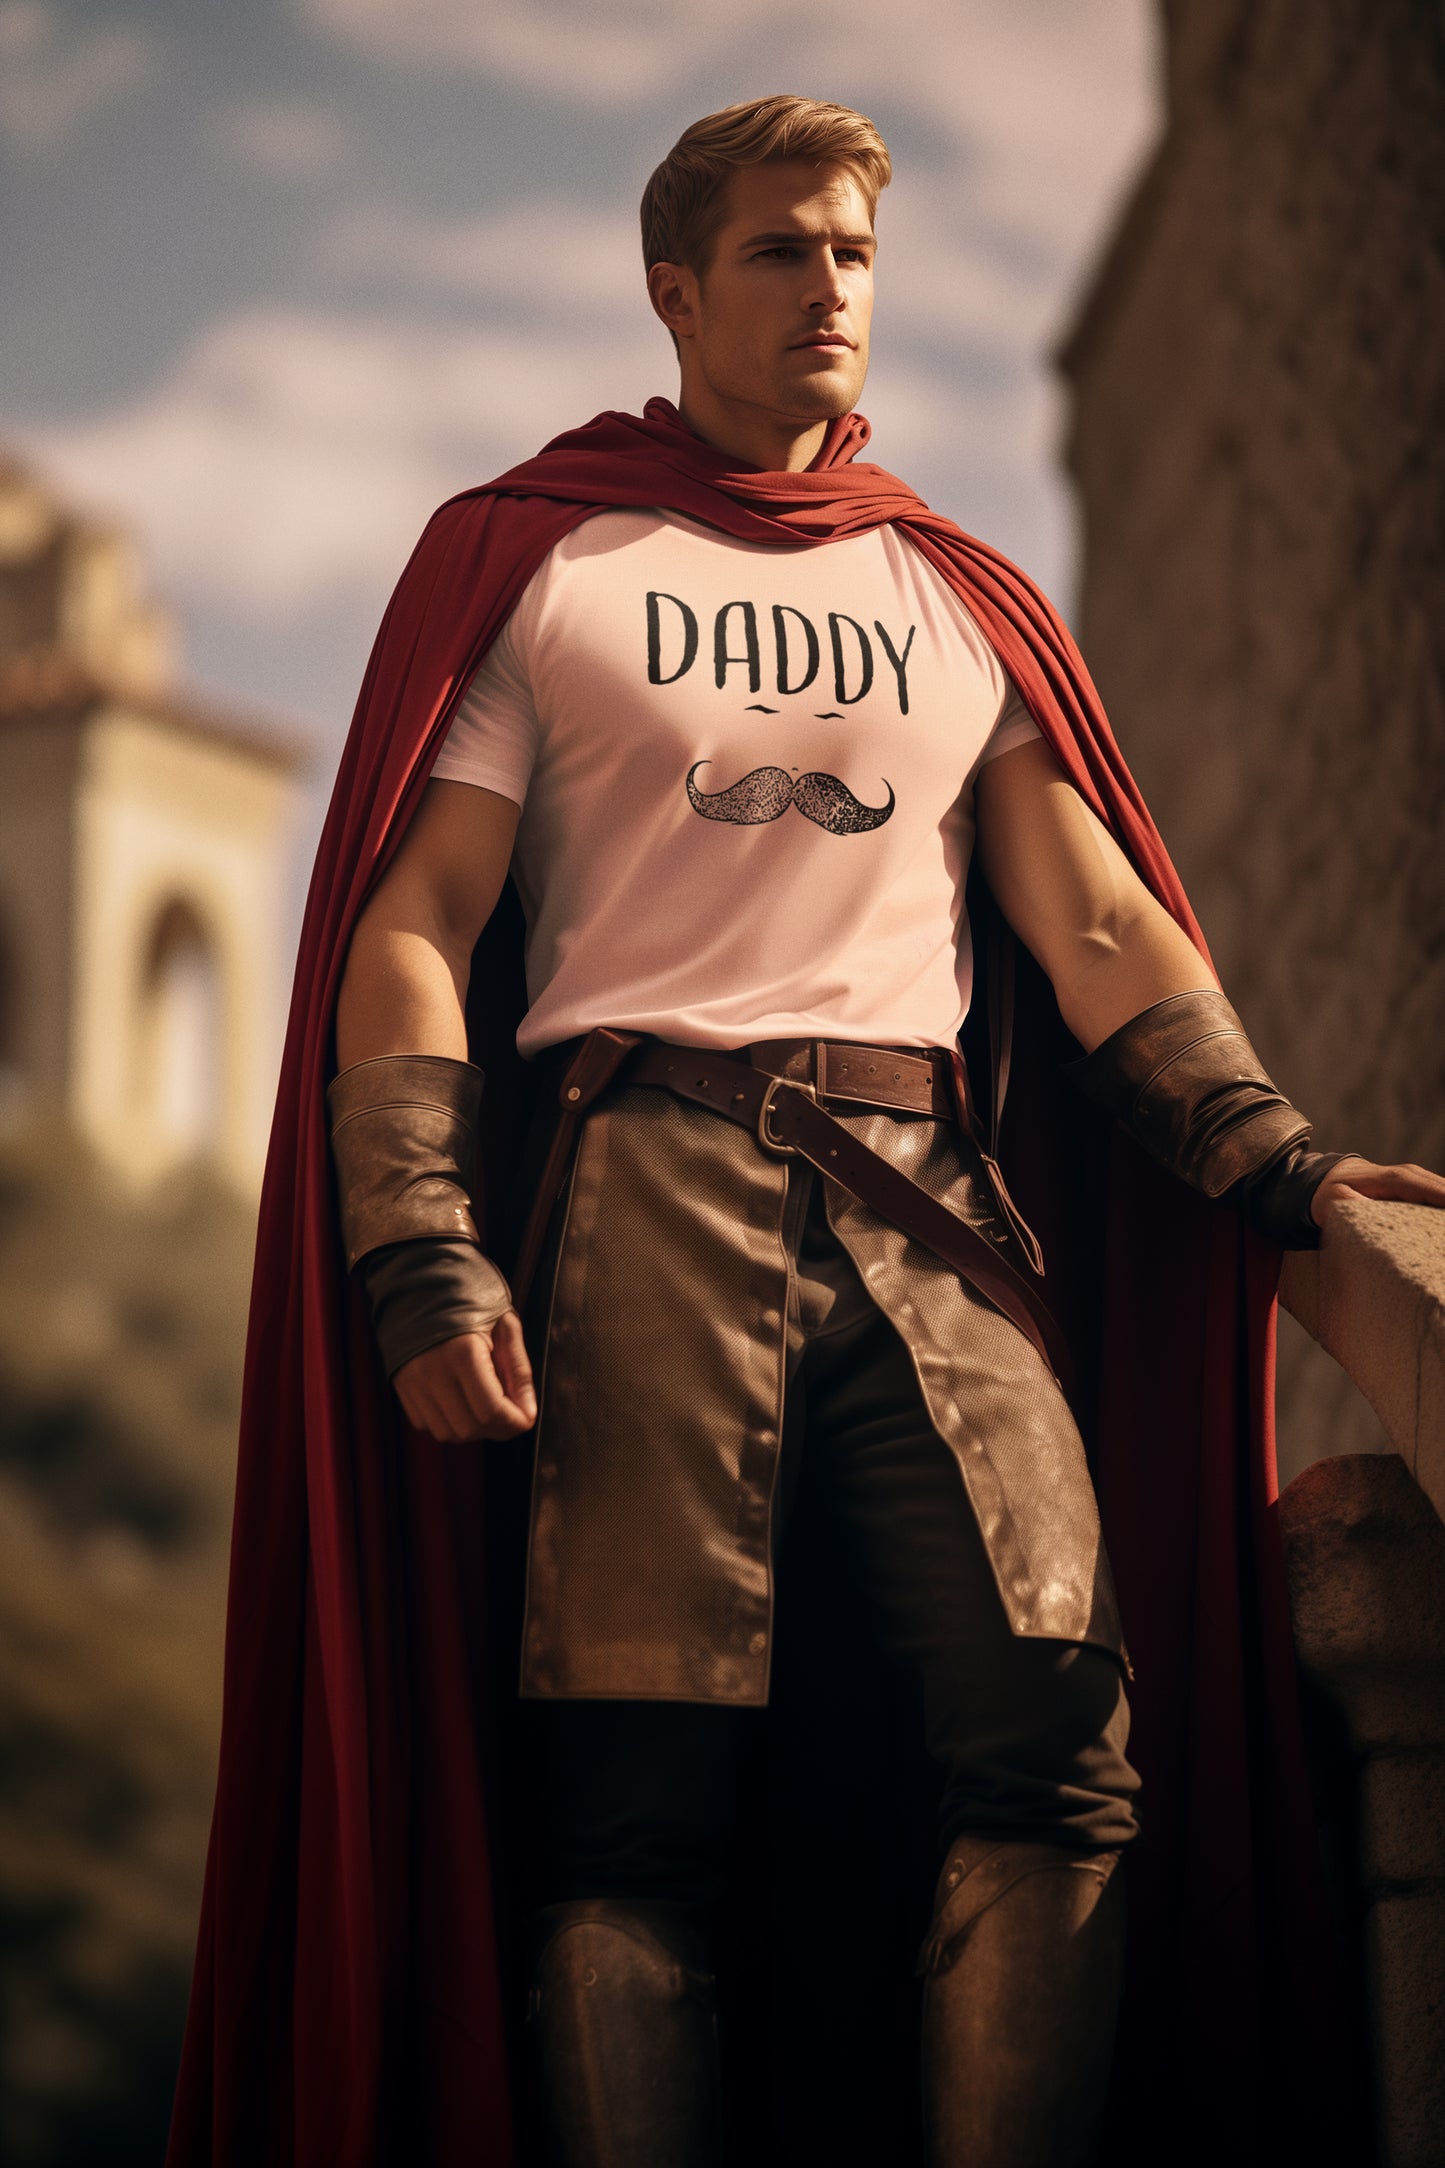 Daddy Summer T-shirt For Men